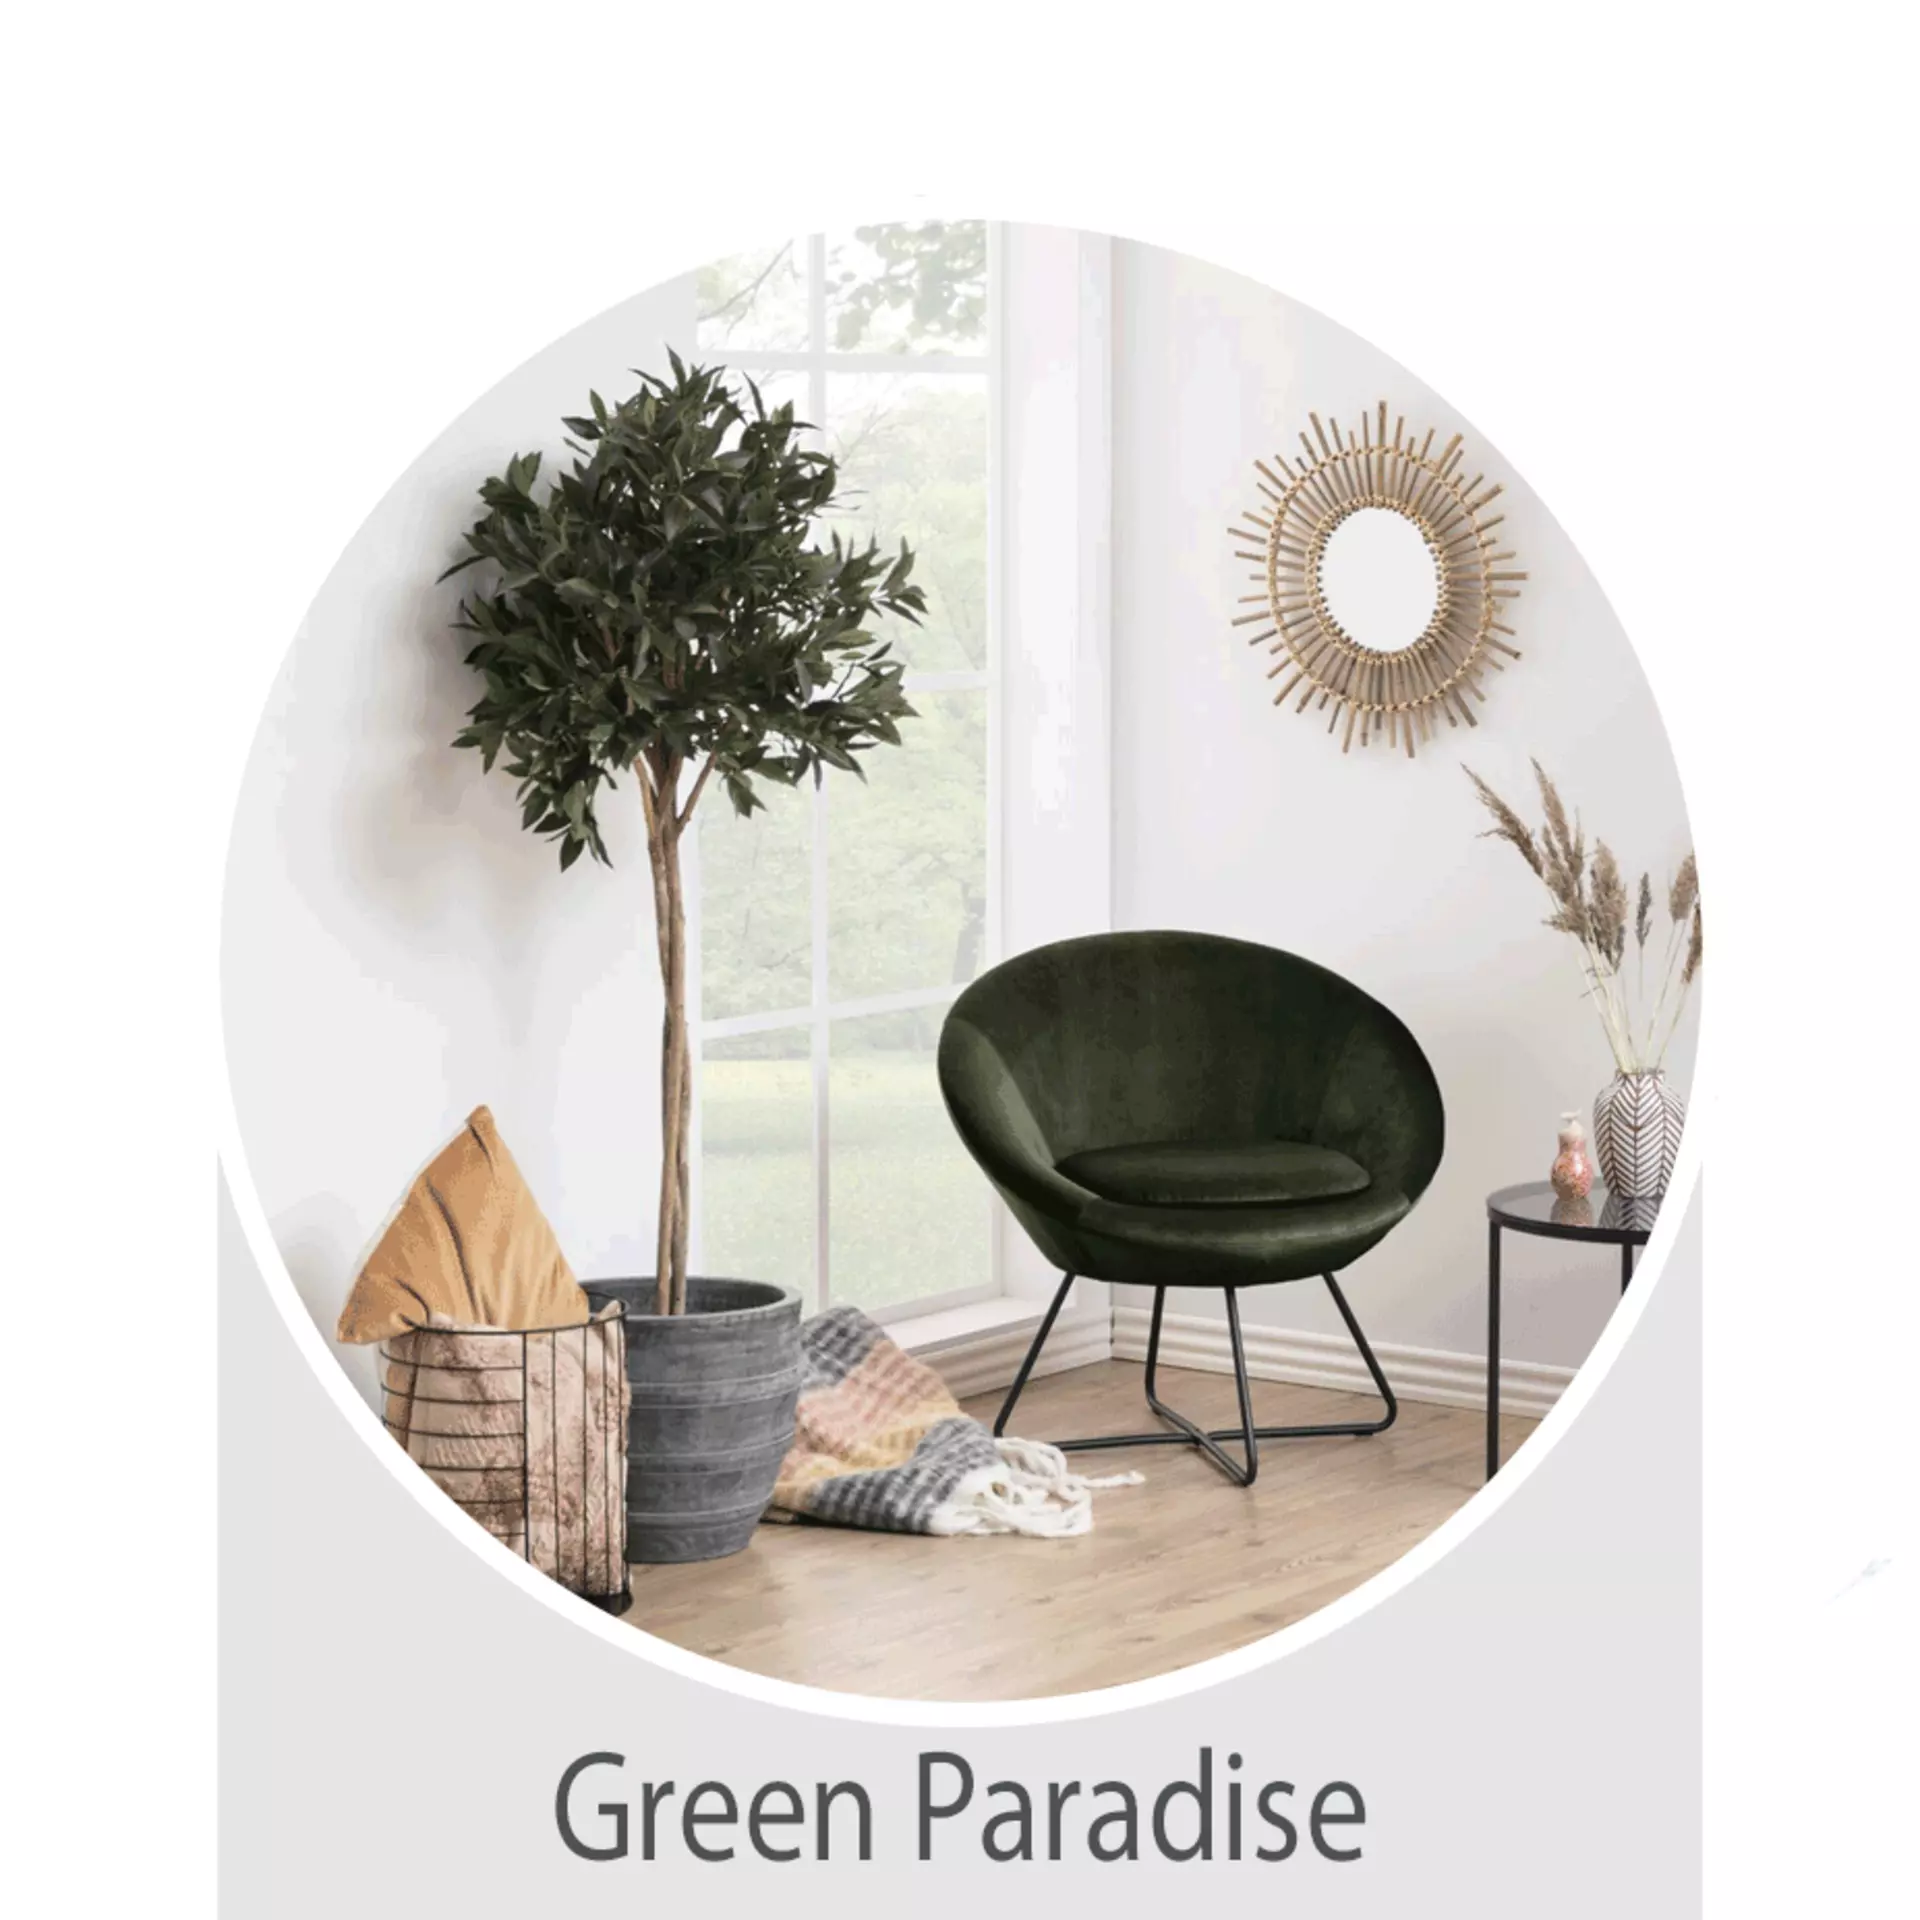 Der Wohntrend Green Paradise -  jetzt bei Möbel Inhofer entdecken und inspirieren lassen